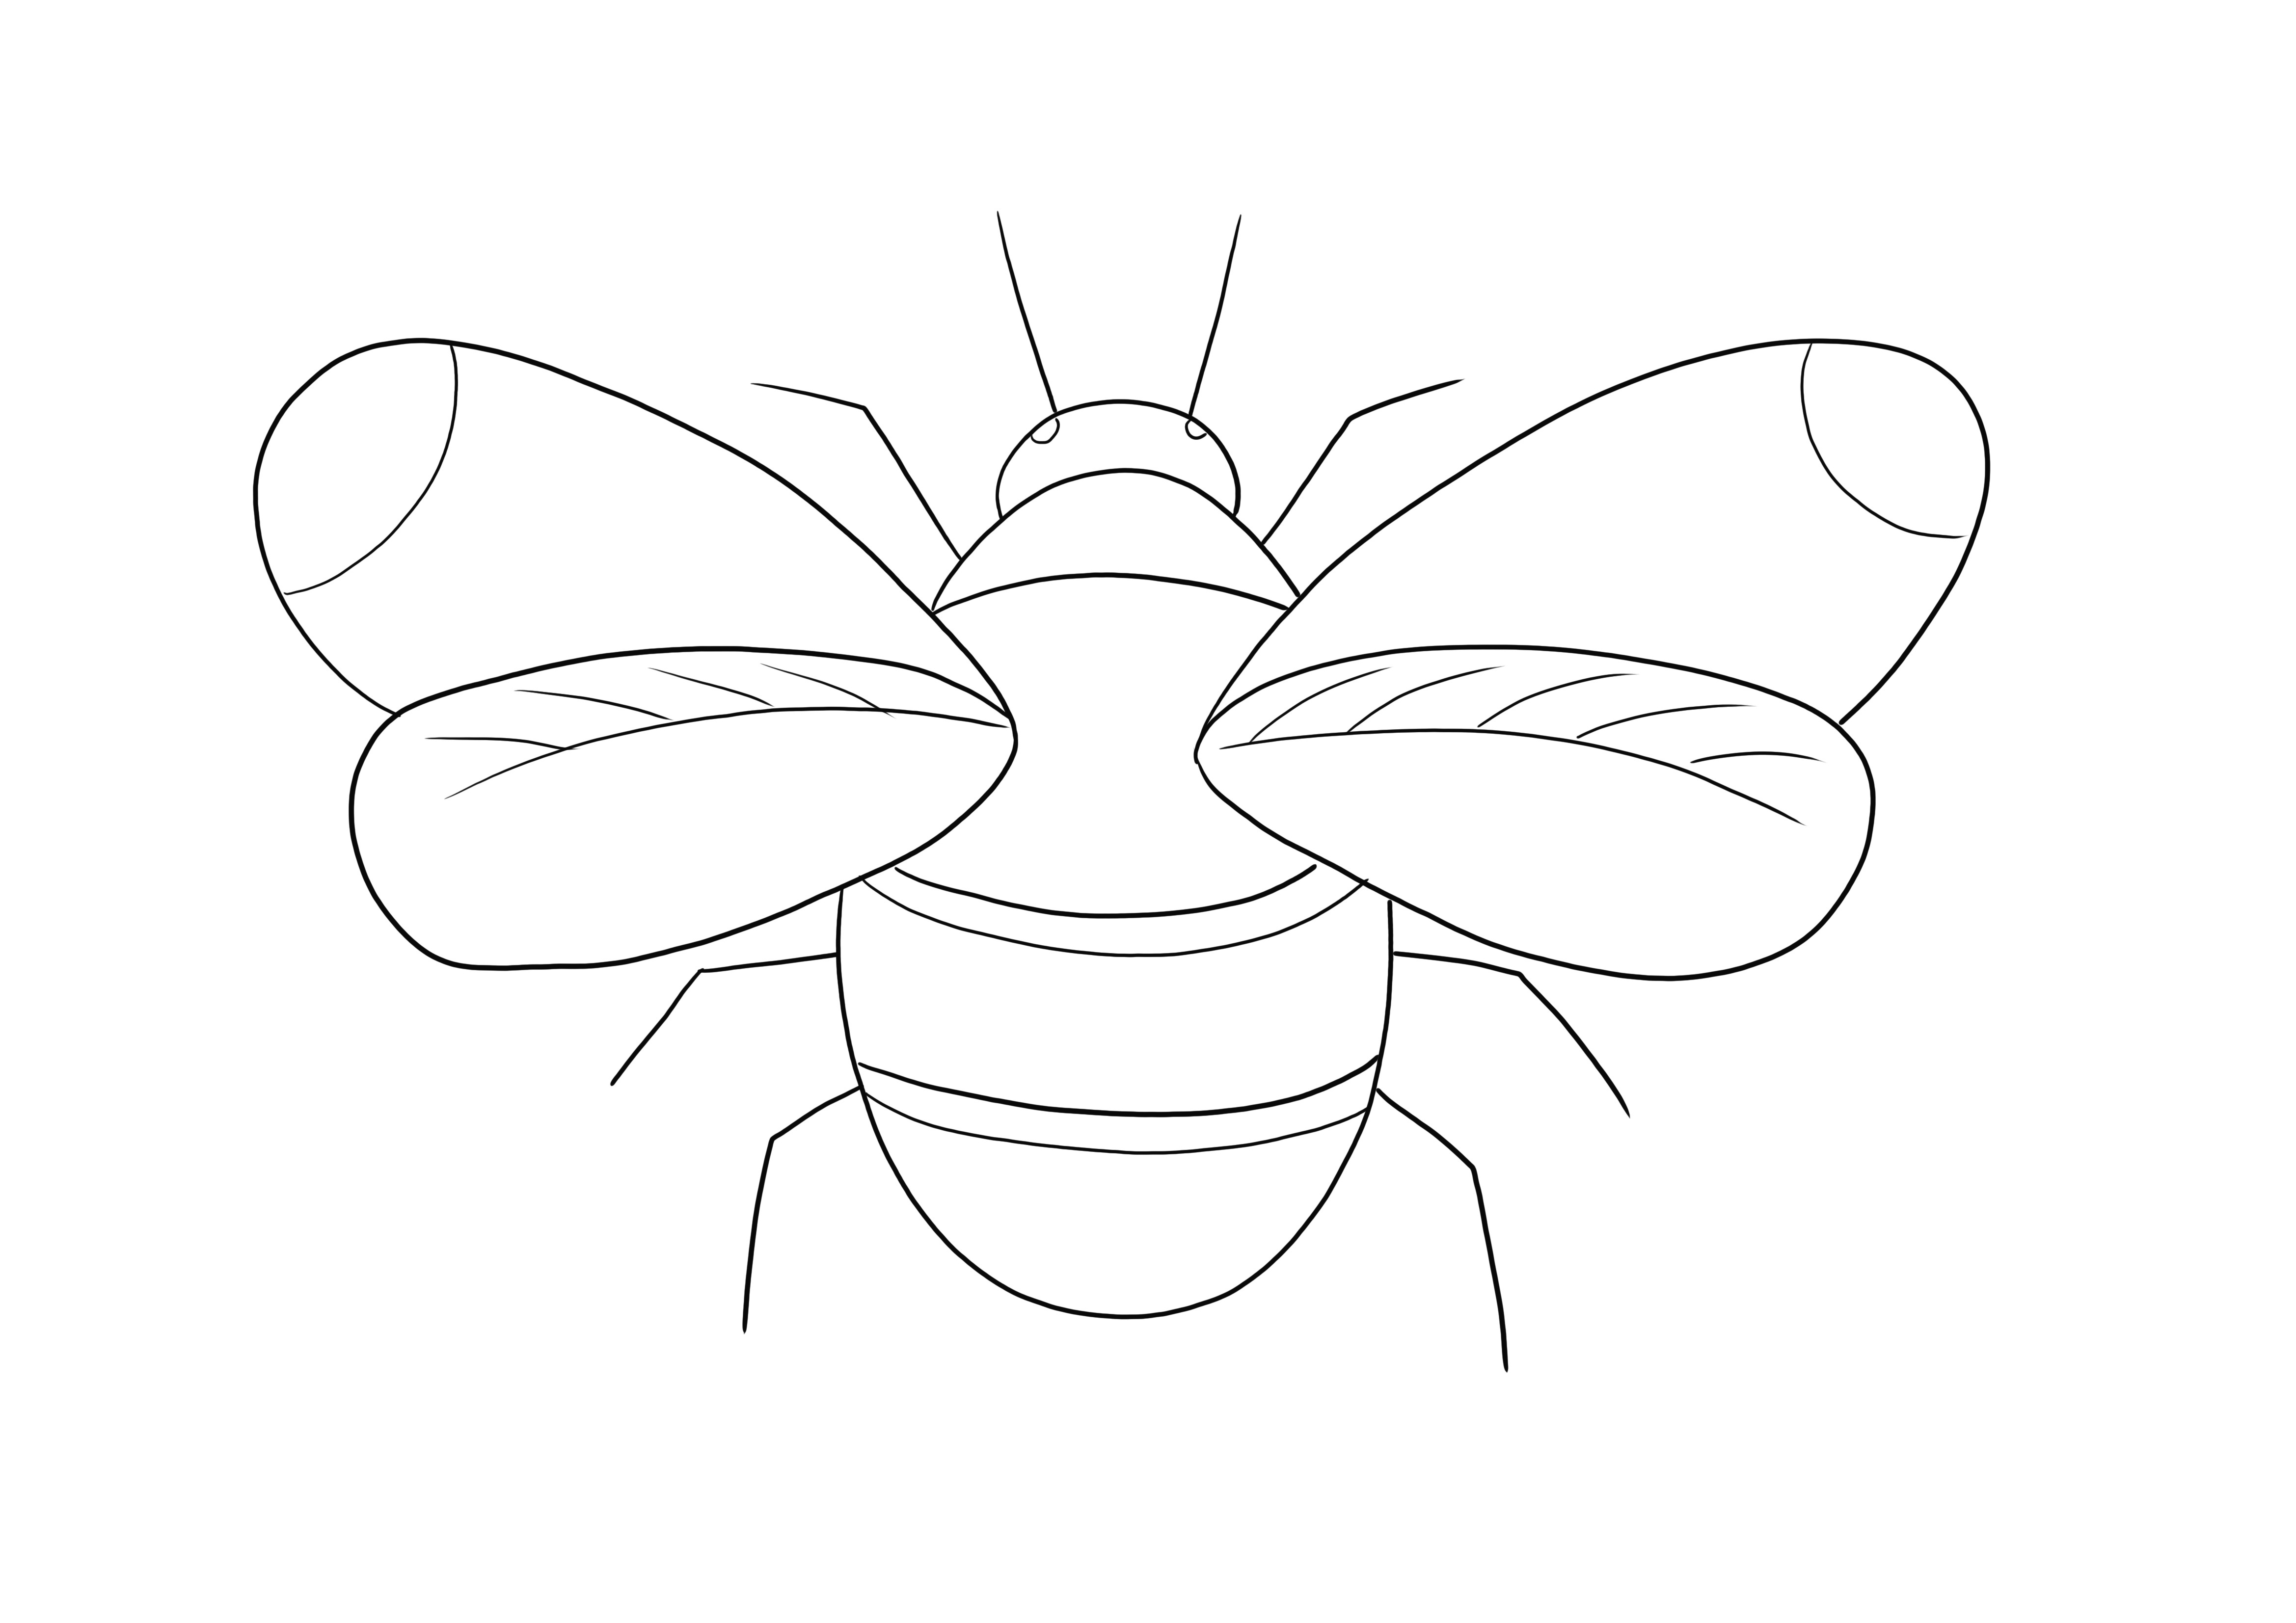 Das Bumblebee-Malblatt kann kostenlos heruntergeladen oder ausgedruckt und ausgemalt werden